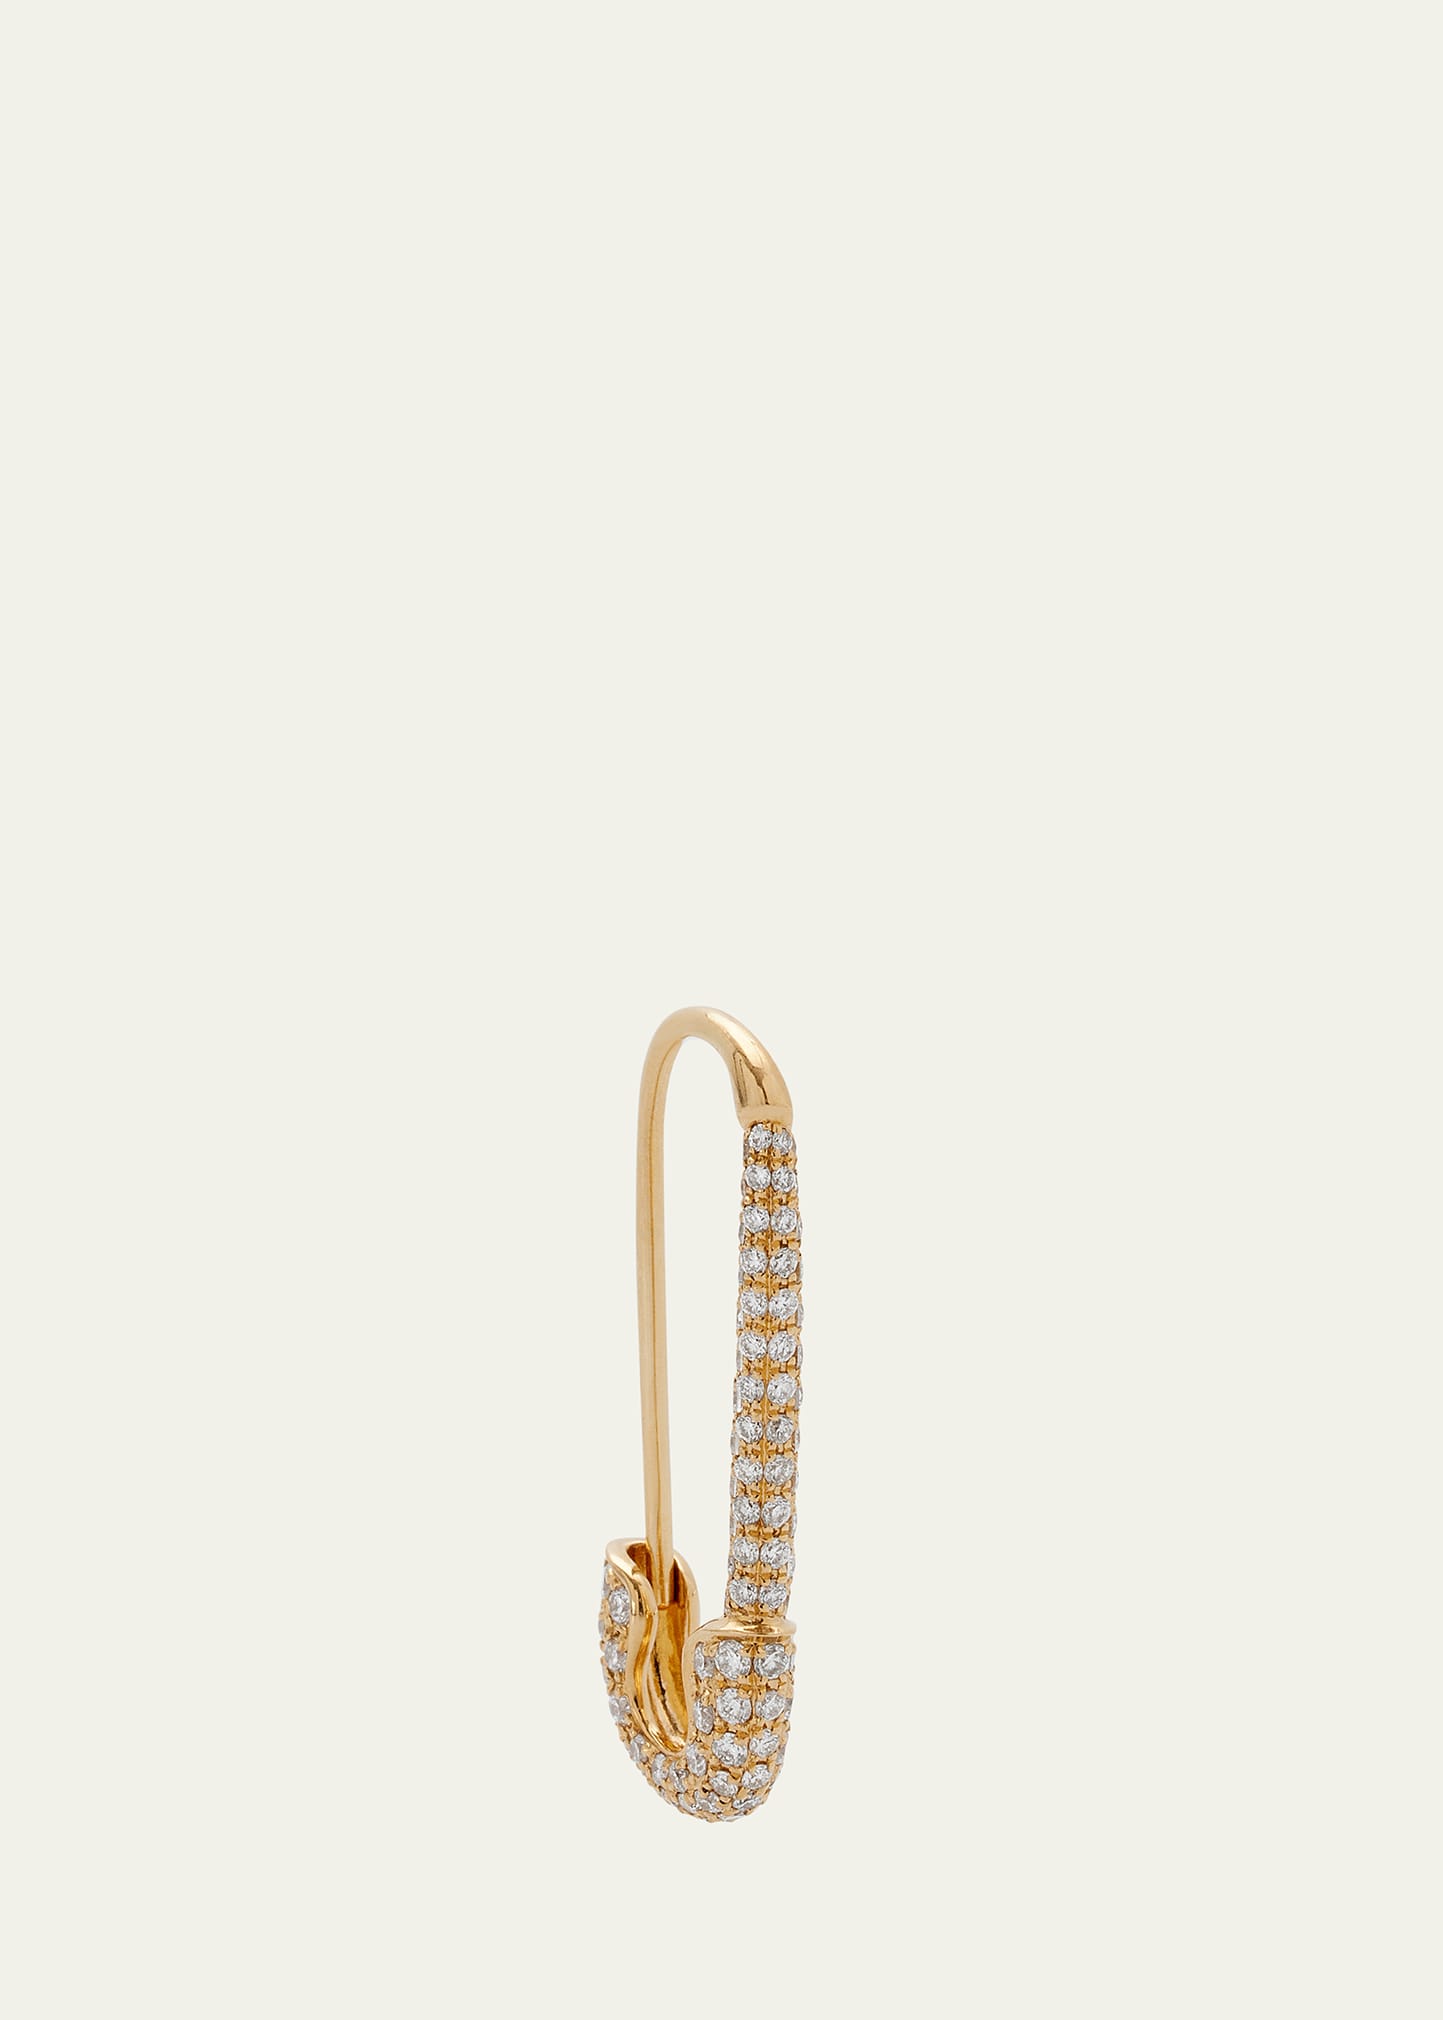 Anita Ko 18K Yellow Gold Diamond Pave Safety Pin Earring, Single